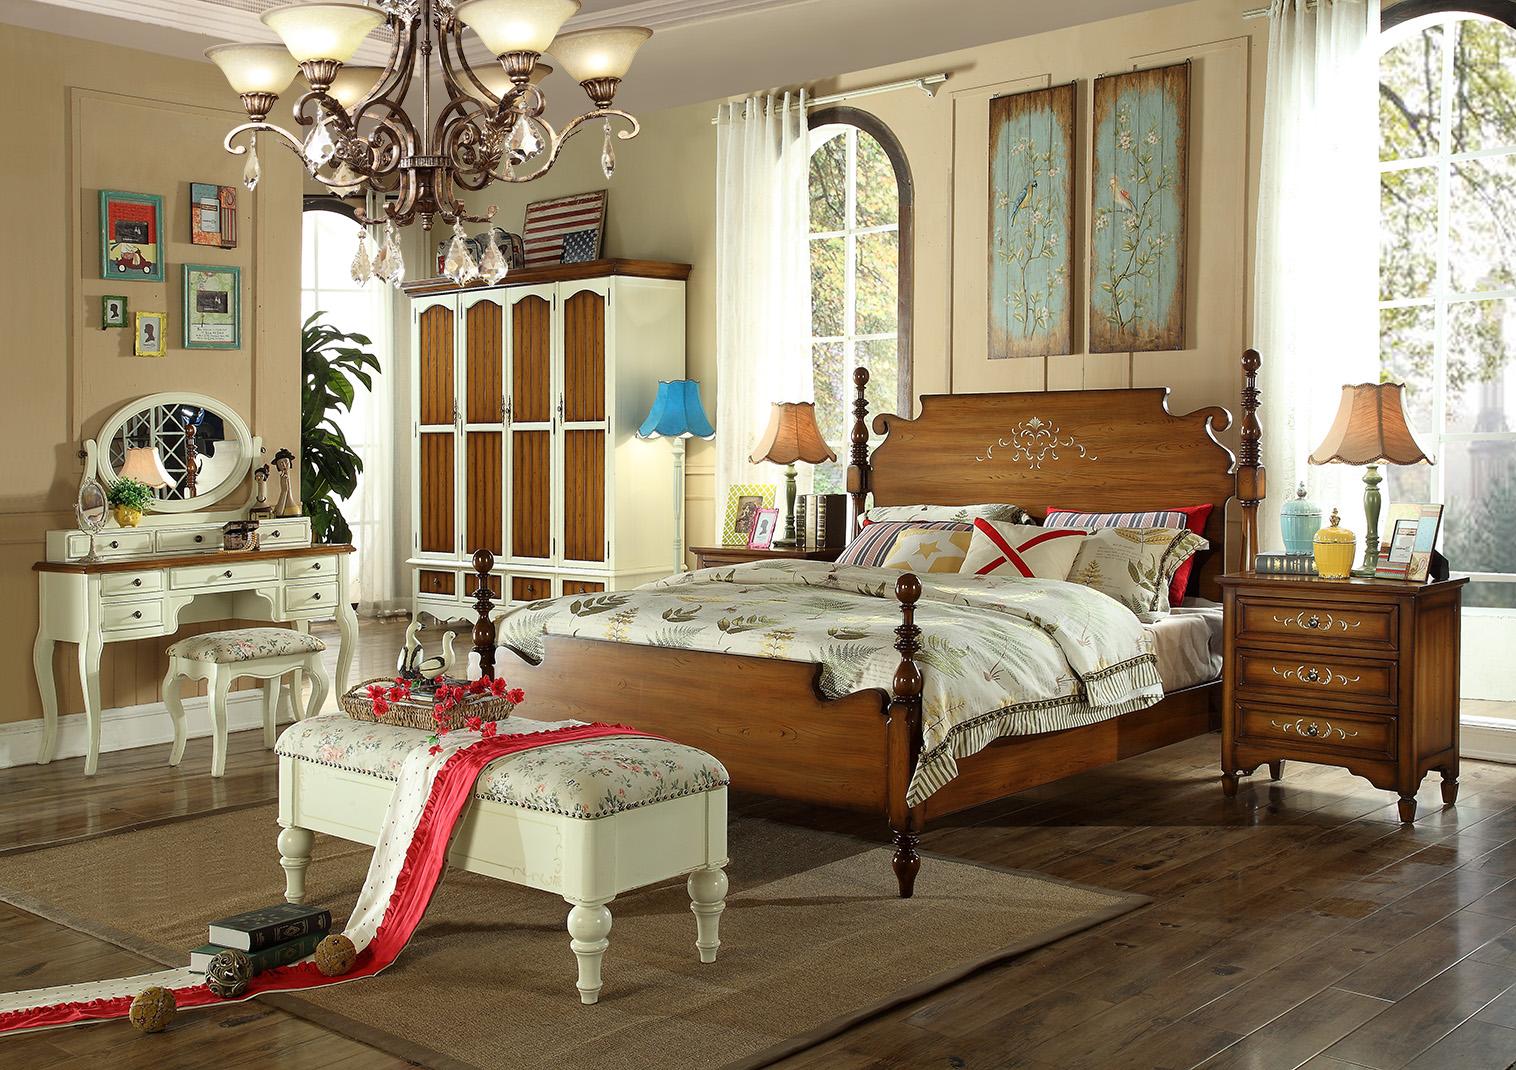 Designer Doppelbett Bett Betten Holz Amerikanisch Hotel Luxus Schlafzimmer Neu